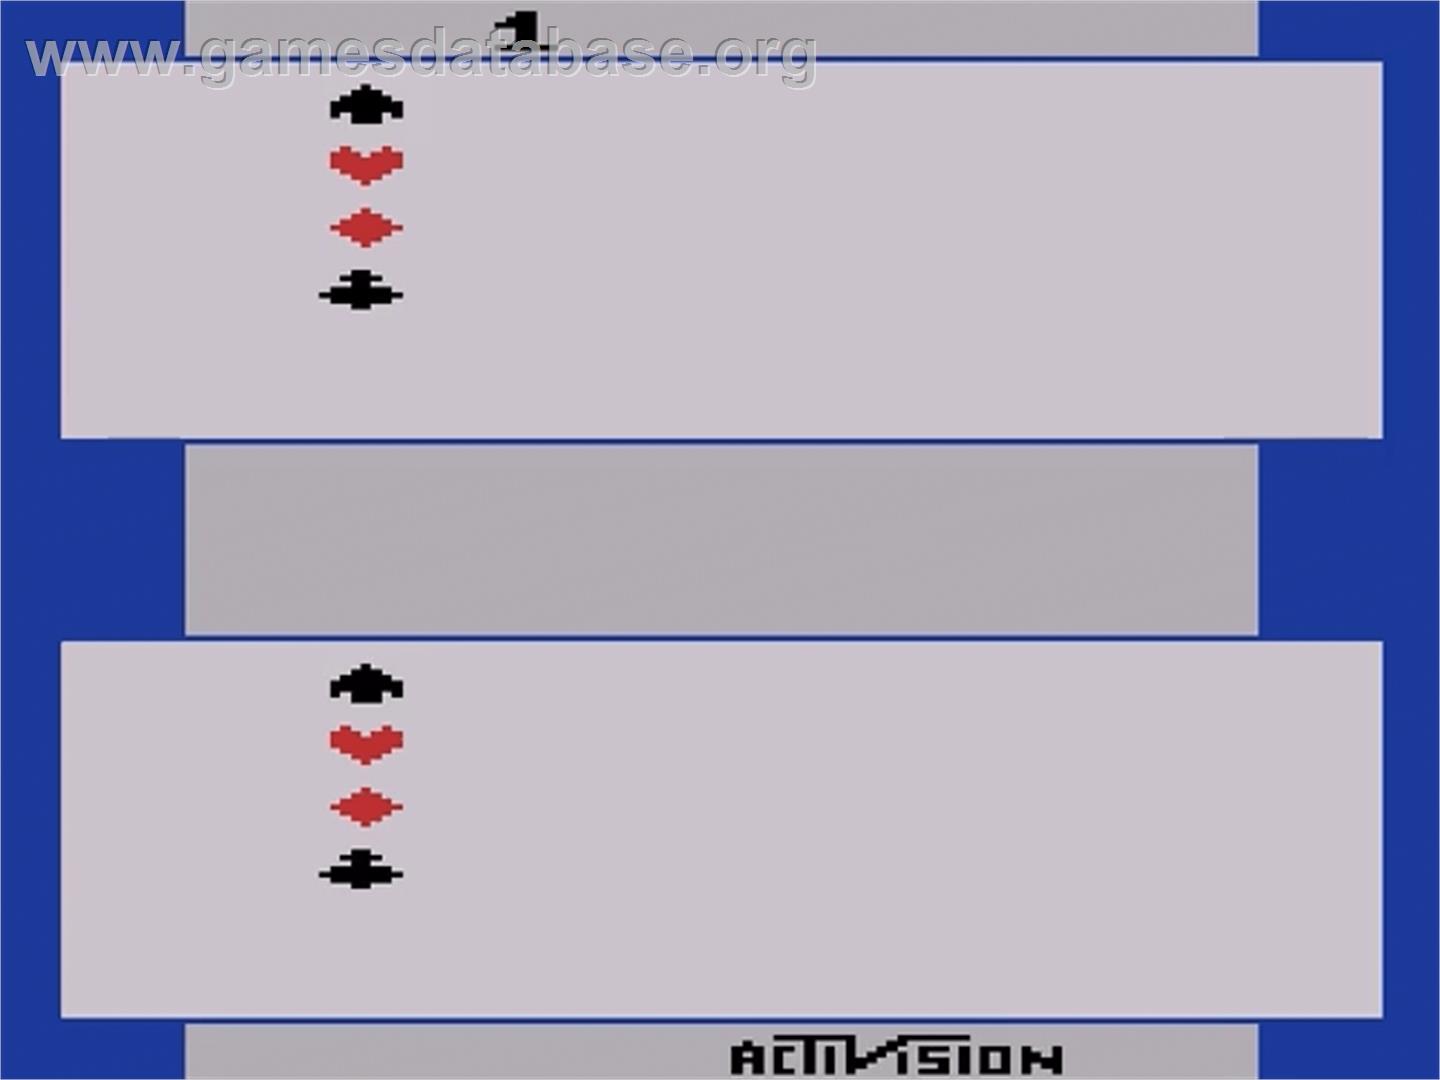 Springer - Atari 2600 - Artwork - Title Screen